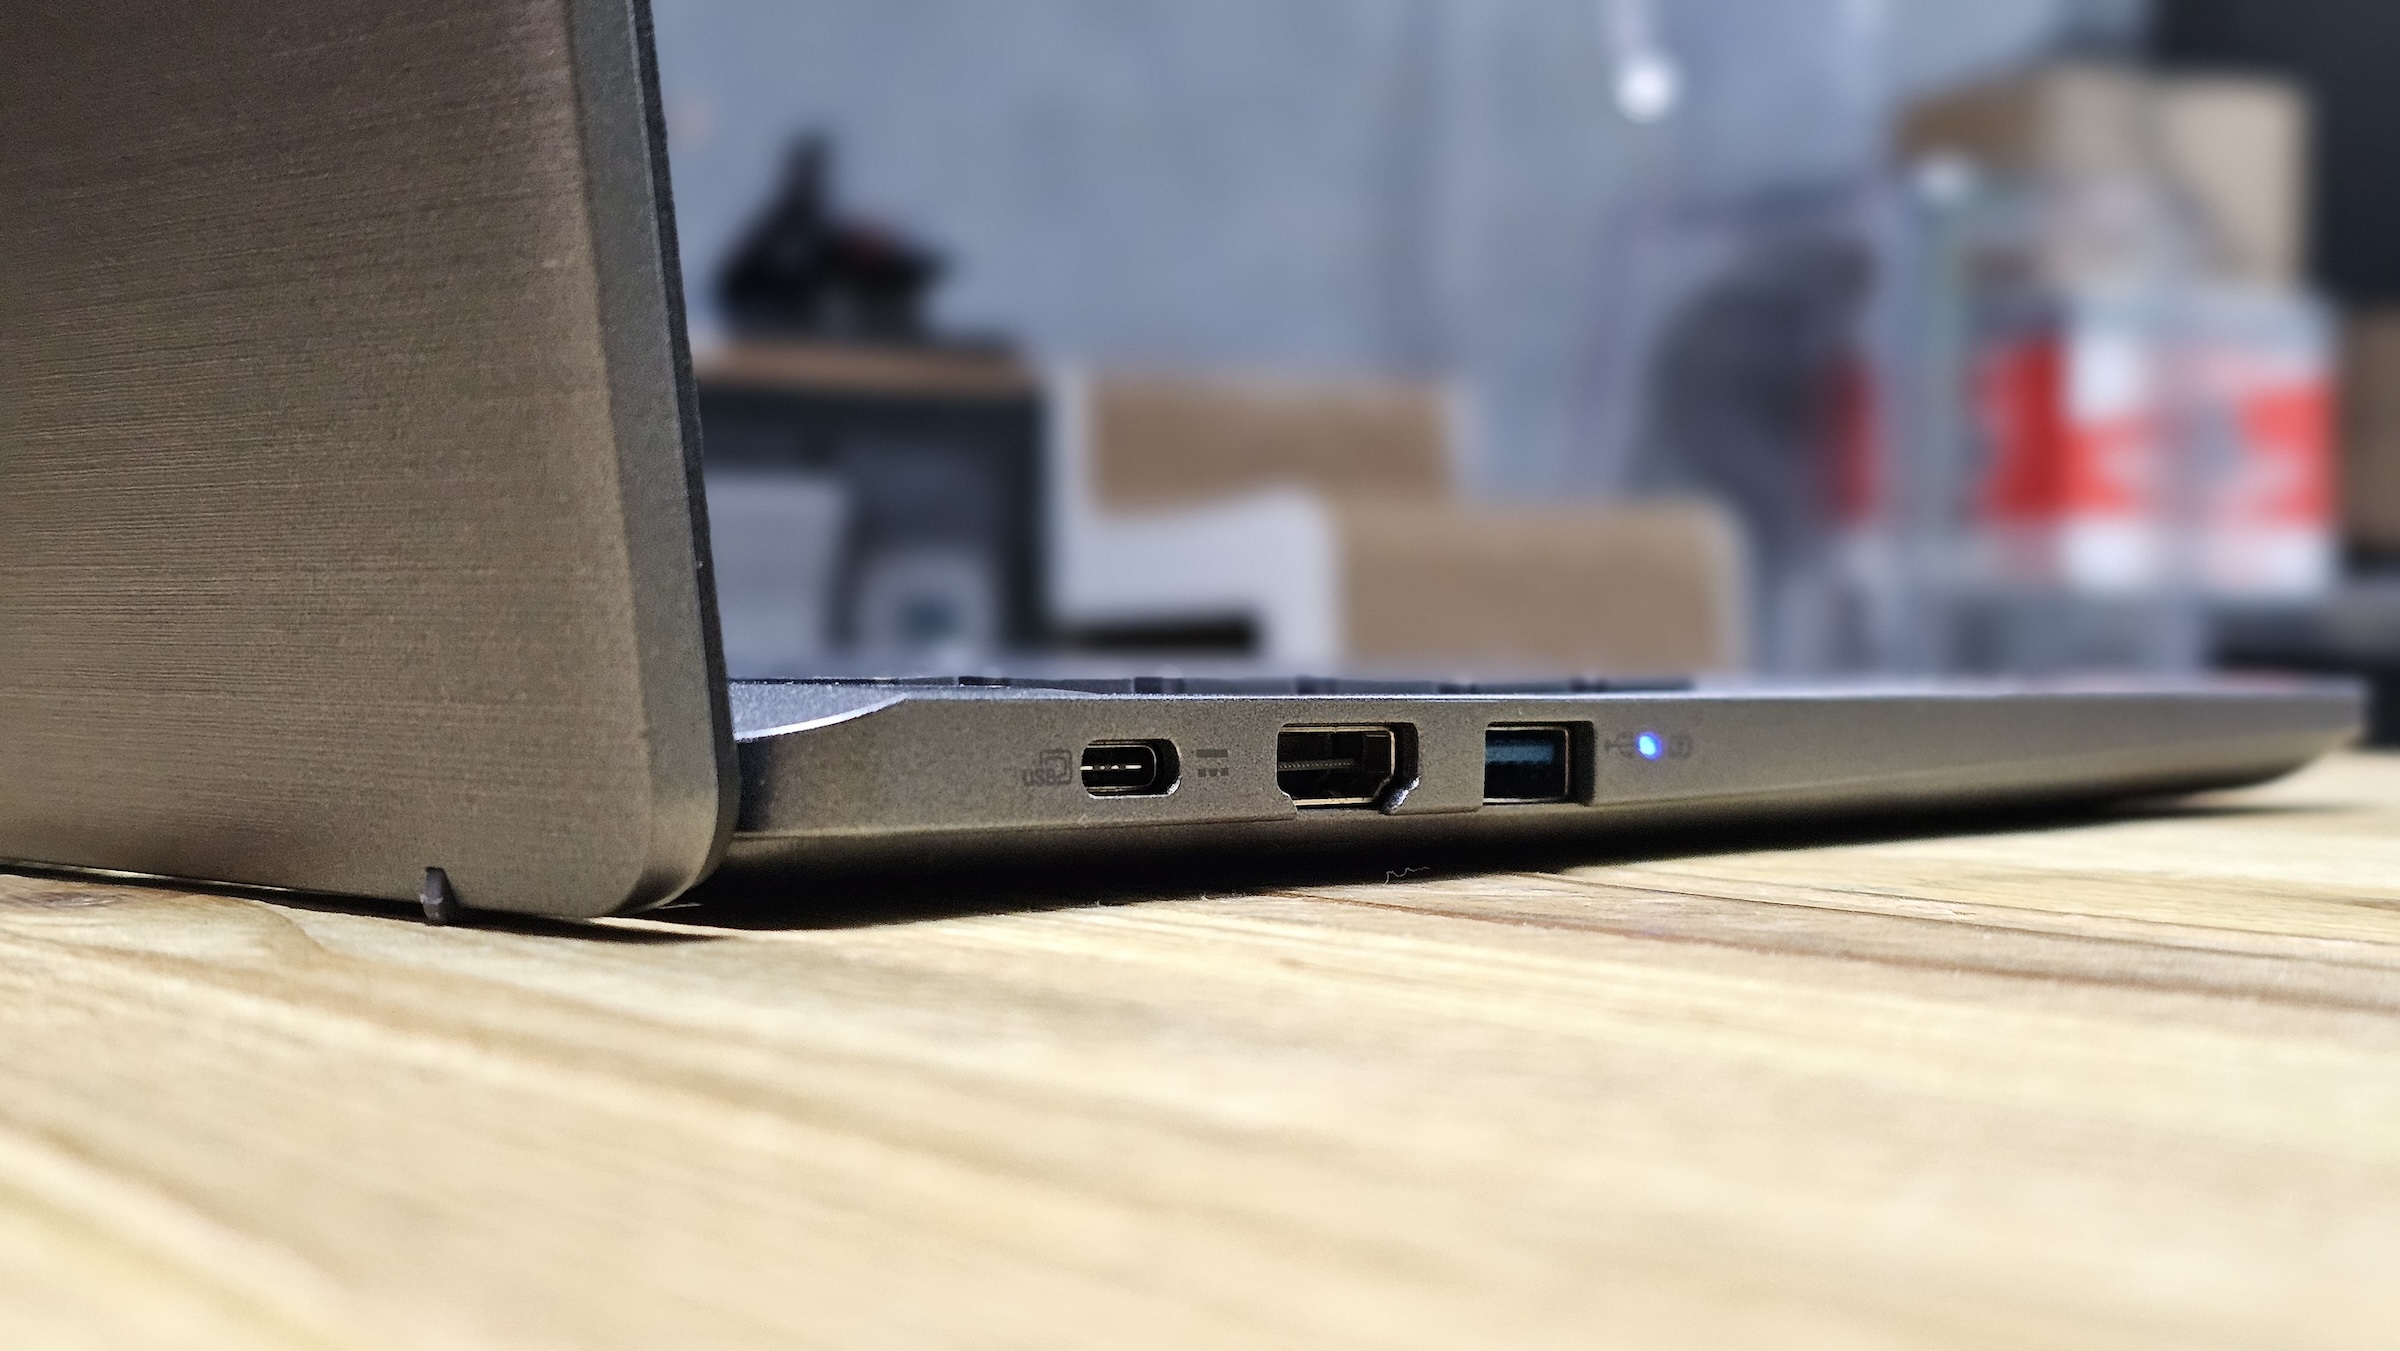 Chromebook Plus 514 Acer